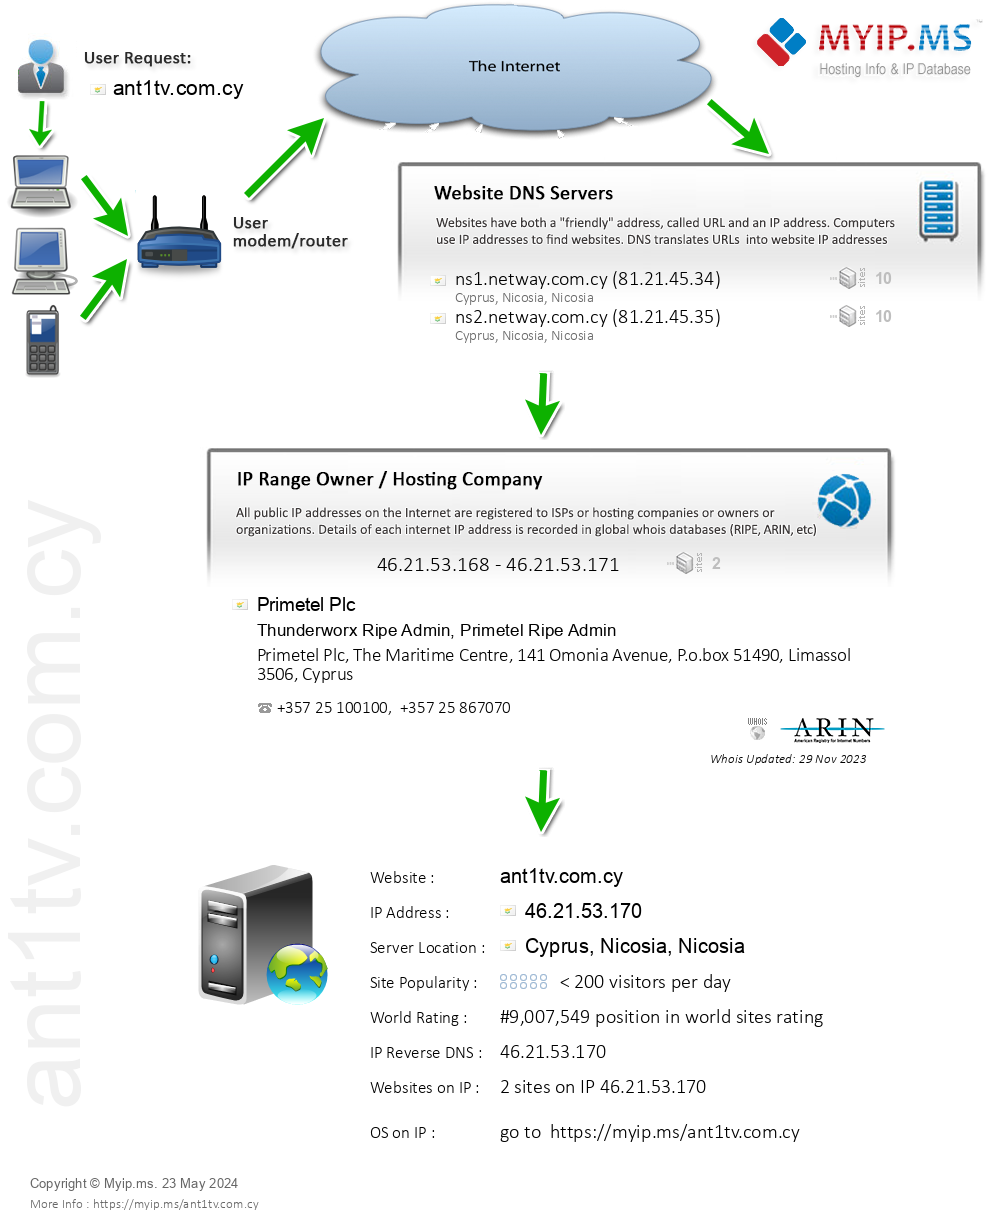 Ant1tv.com.cy - Website Hosting Visual IP Diagram